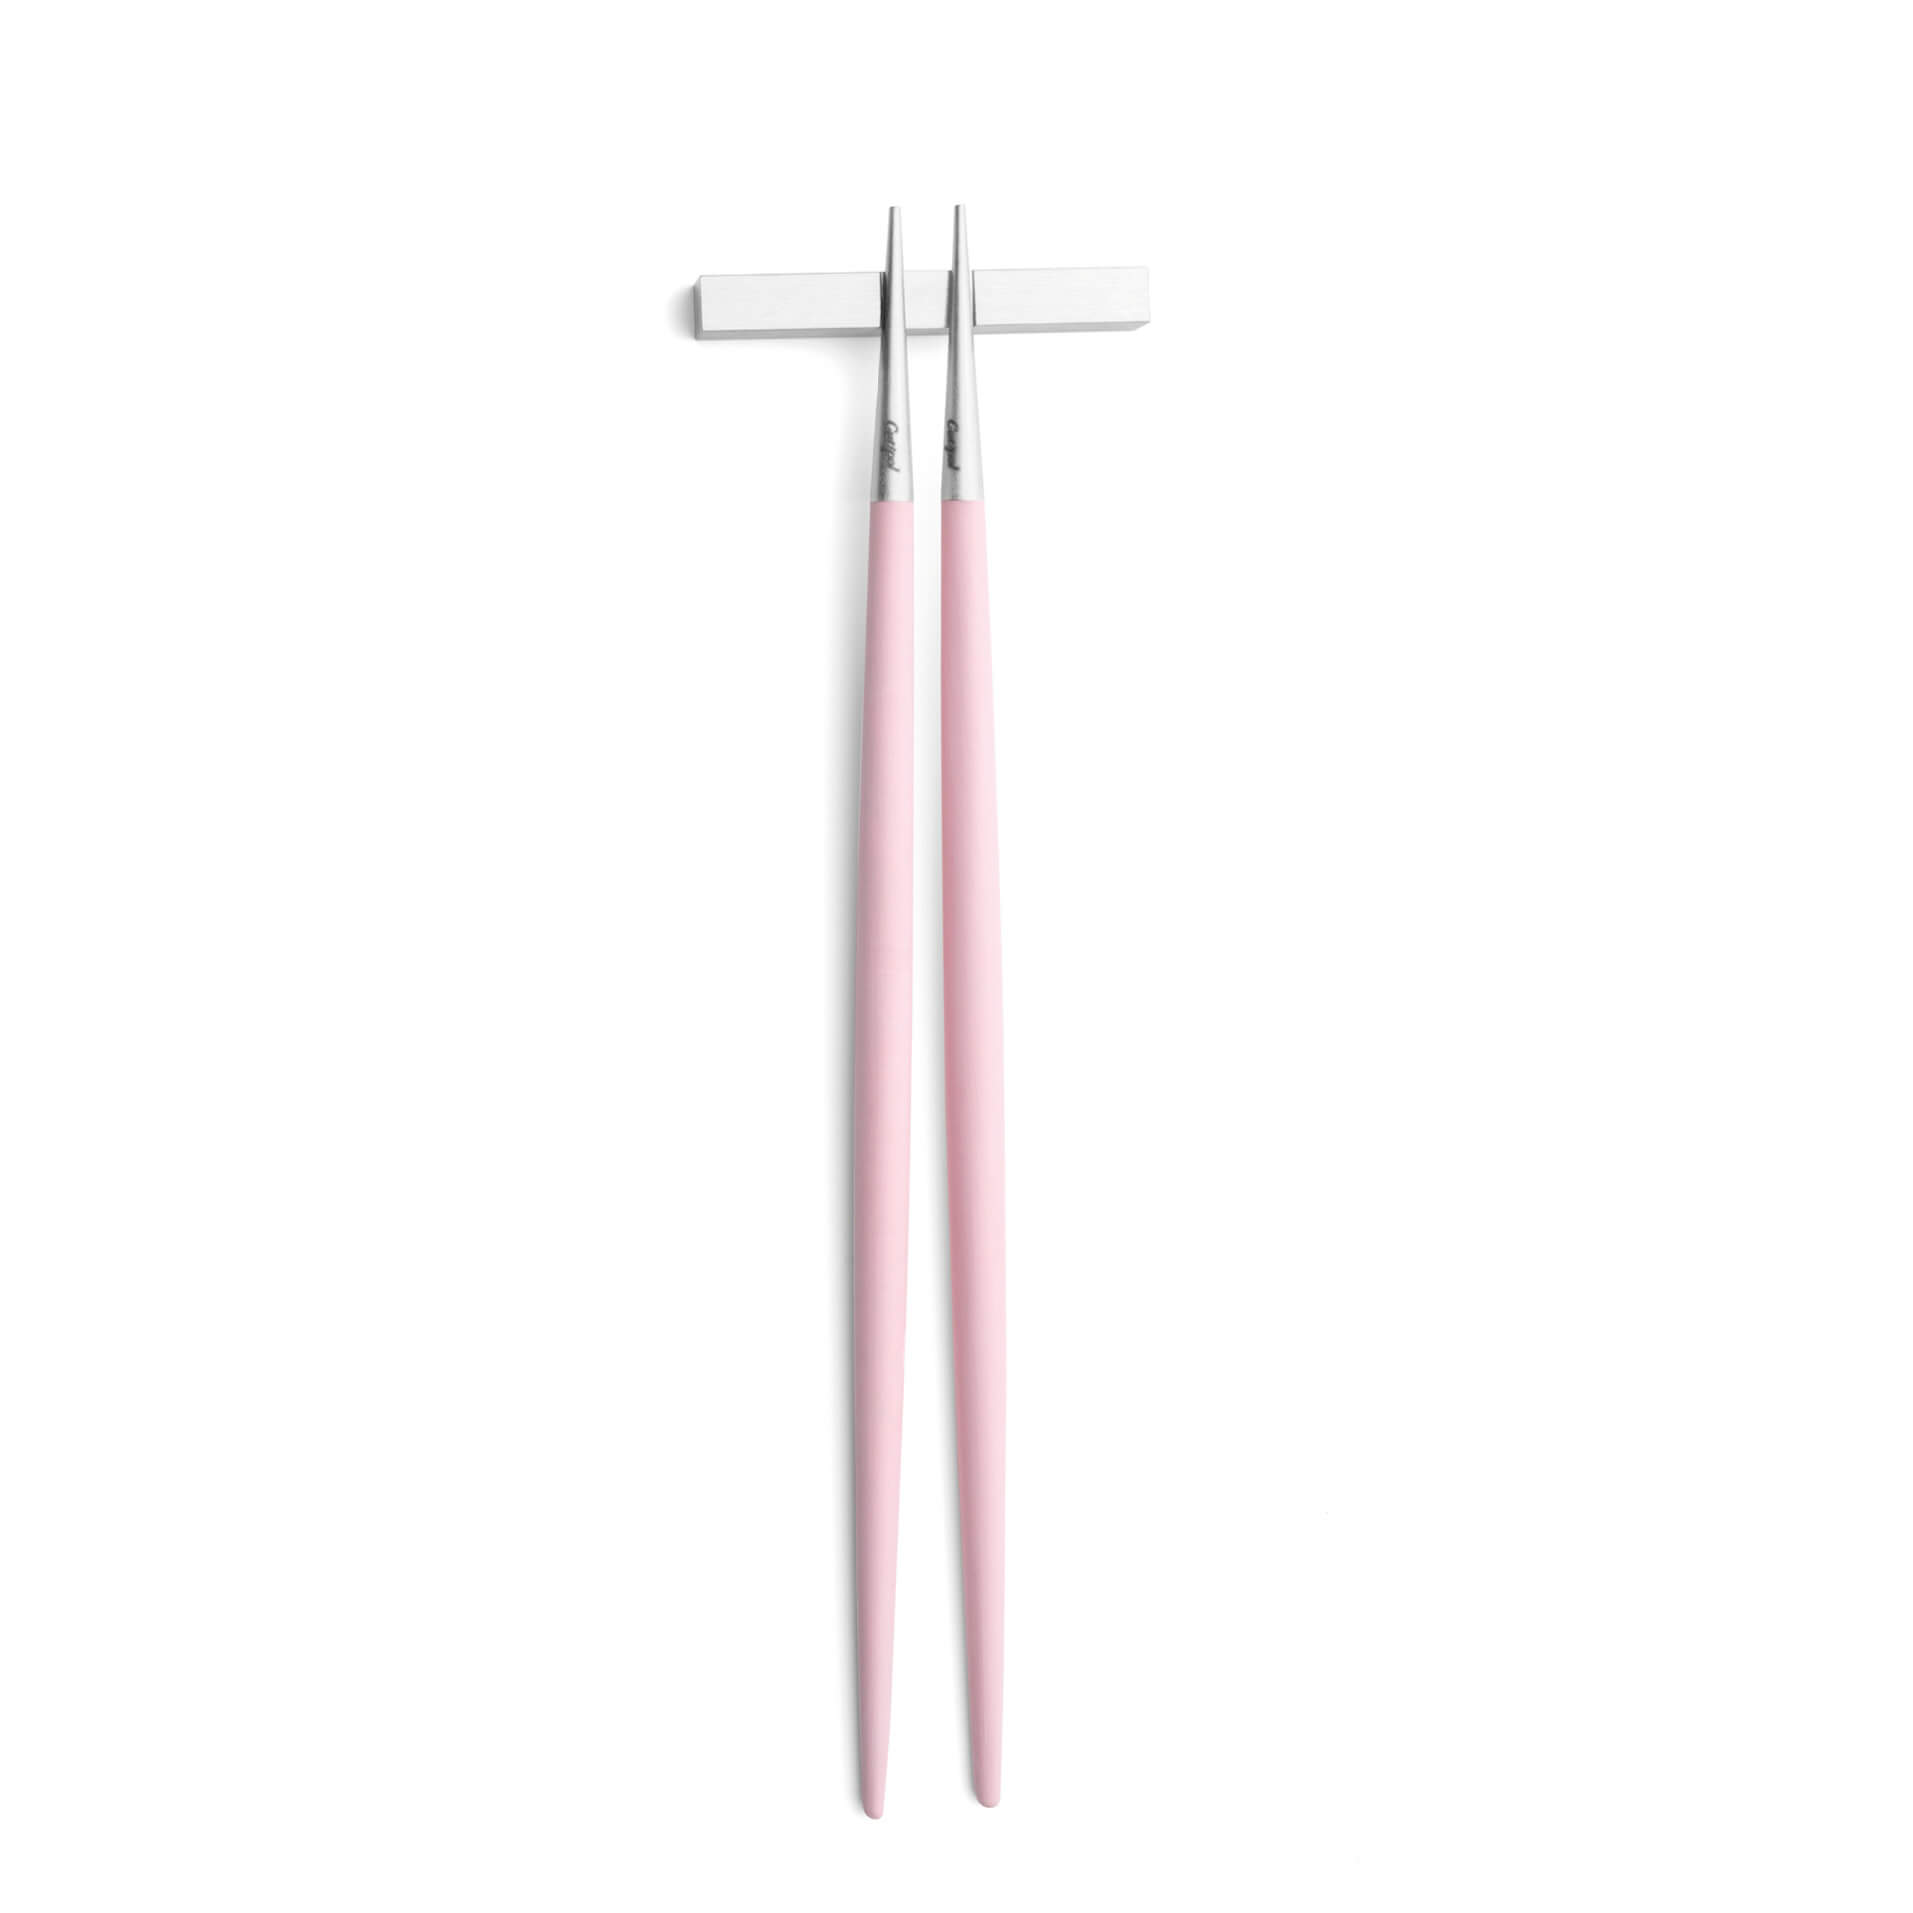 Cutipol Goa Pink chopstick set and support